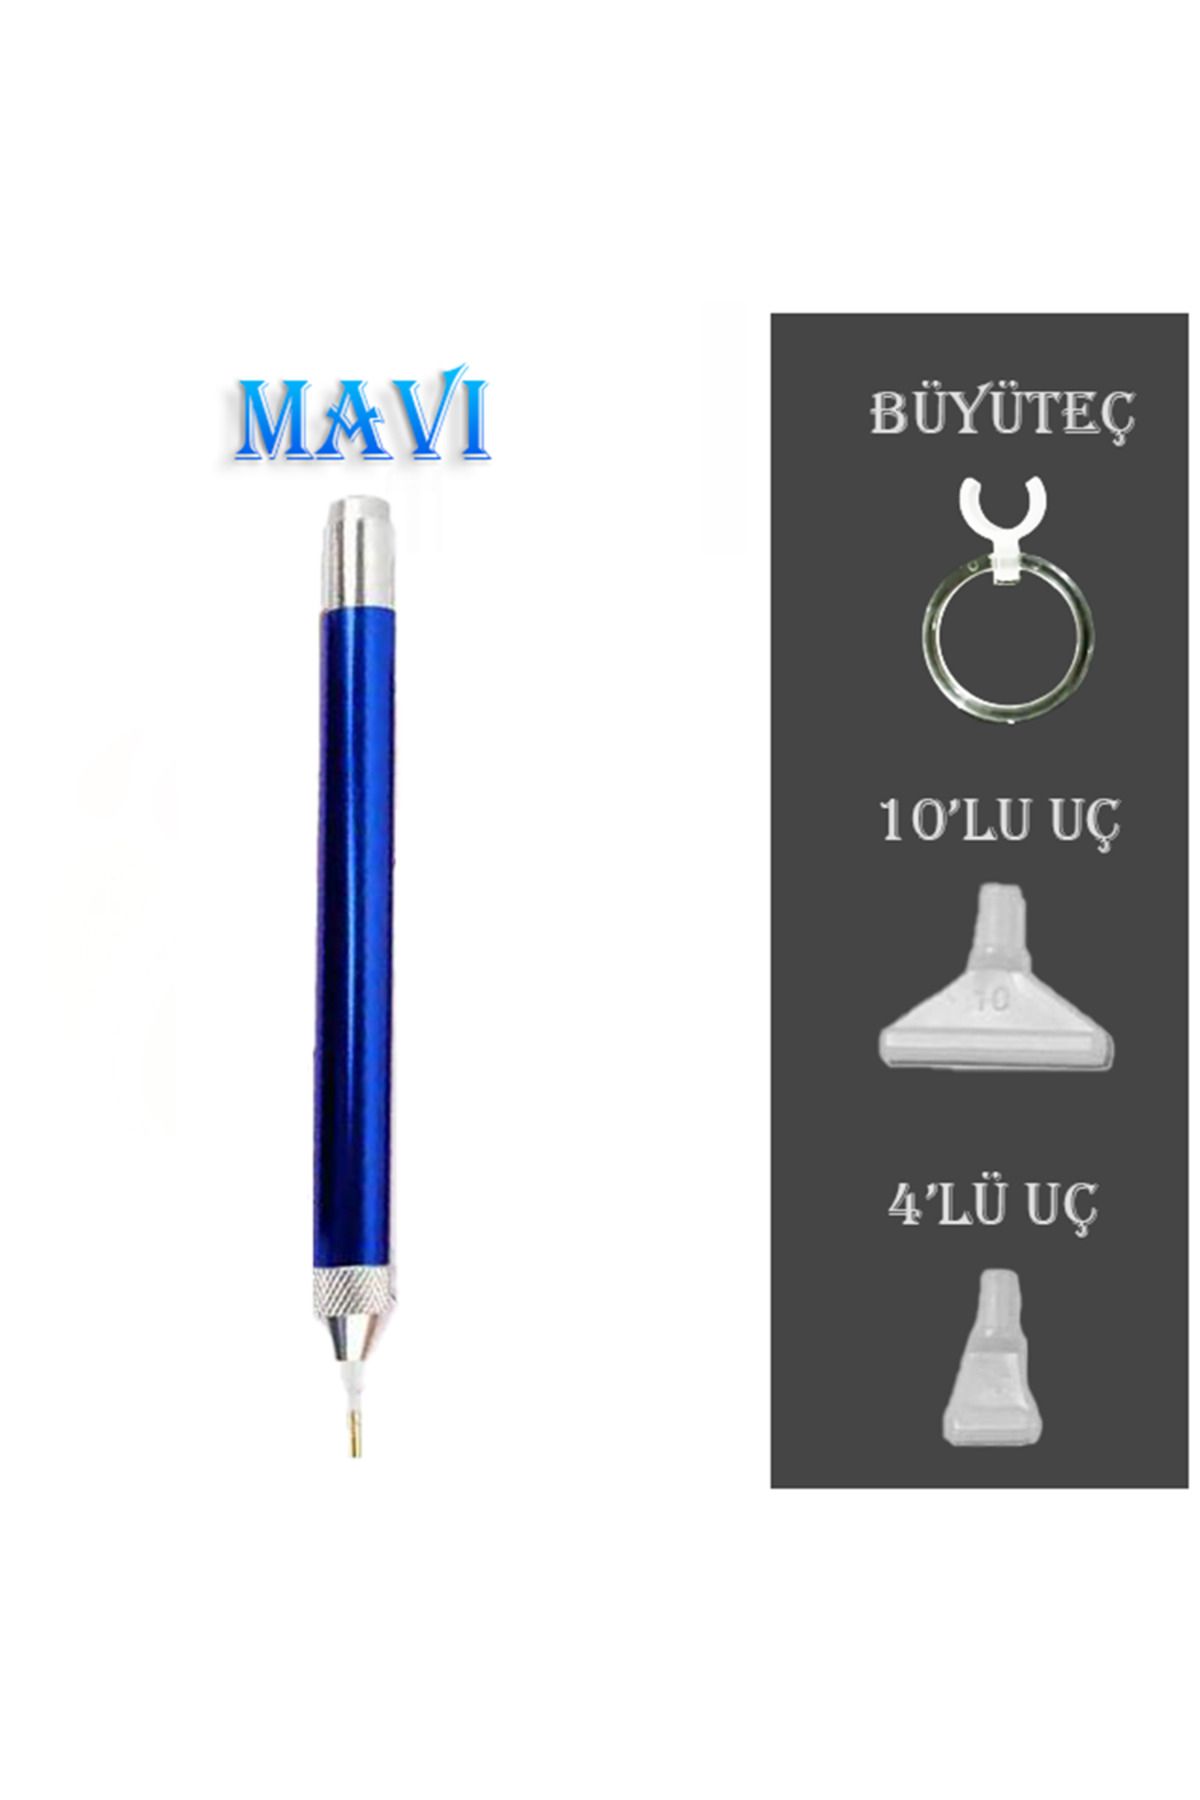 MOVAS Sanat Işıklı Kalem - Mavi - Büyüteç Ve 4'lü-10'lu Uçlar | E2020ak10